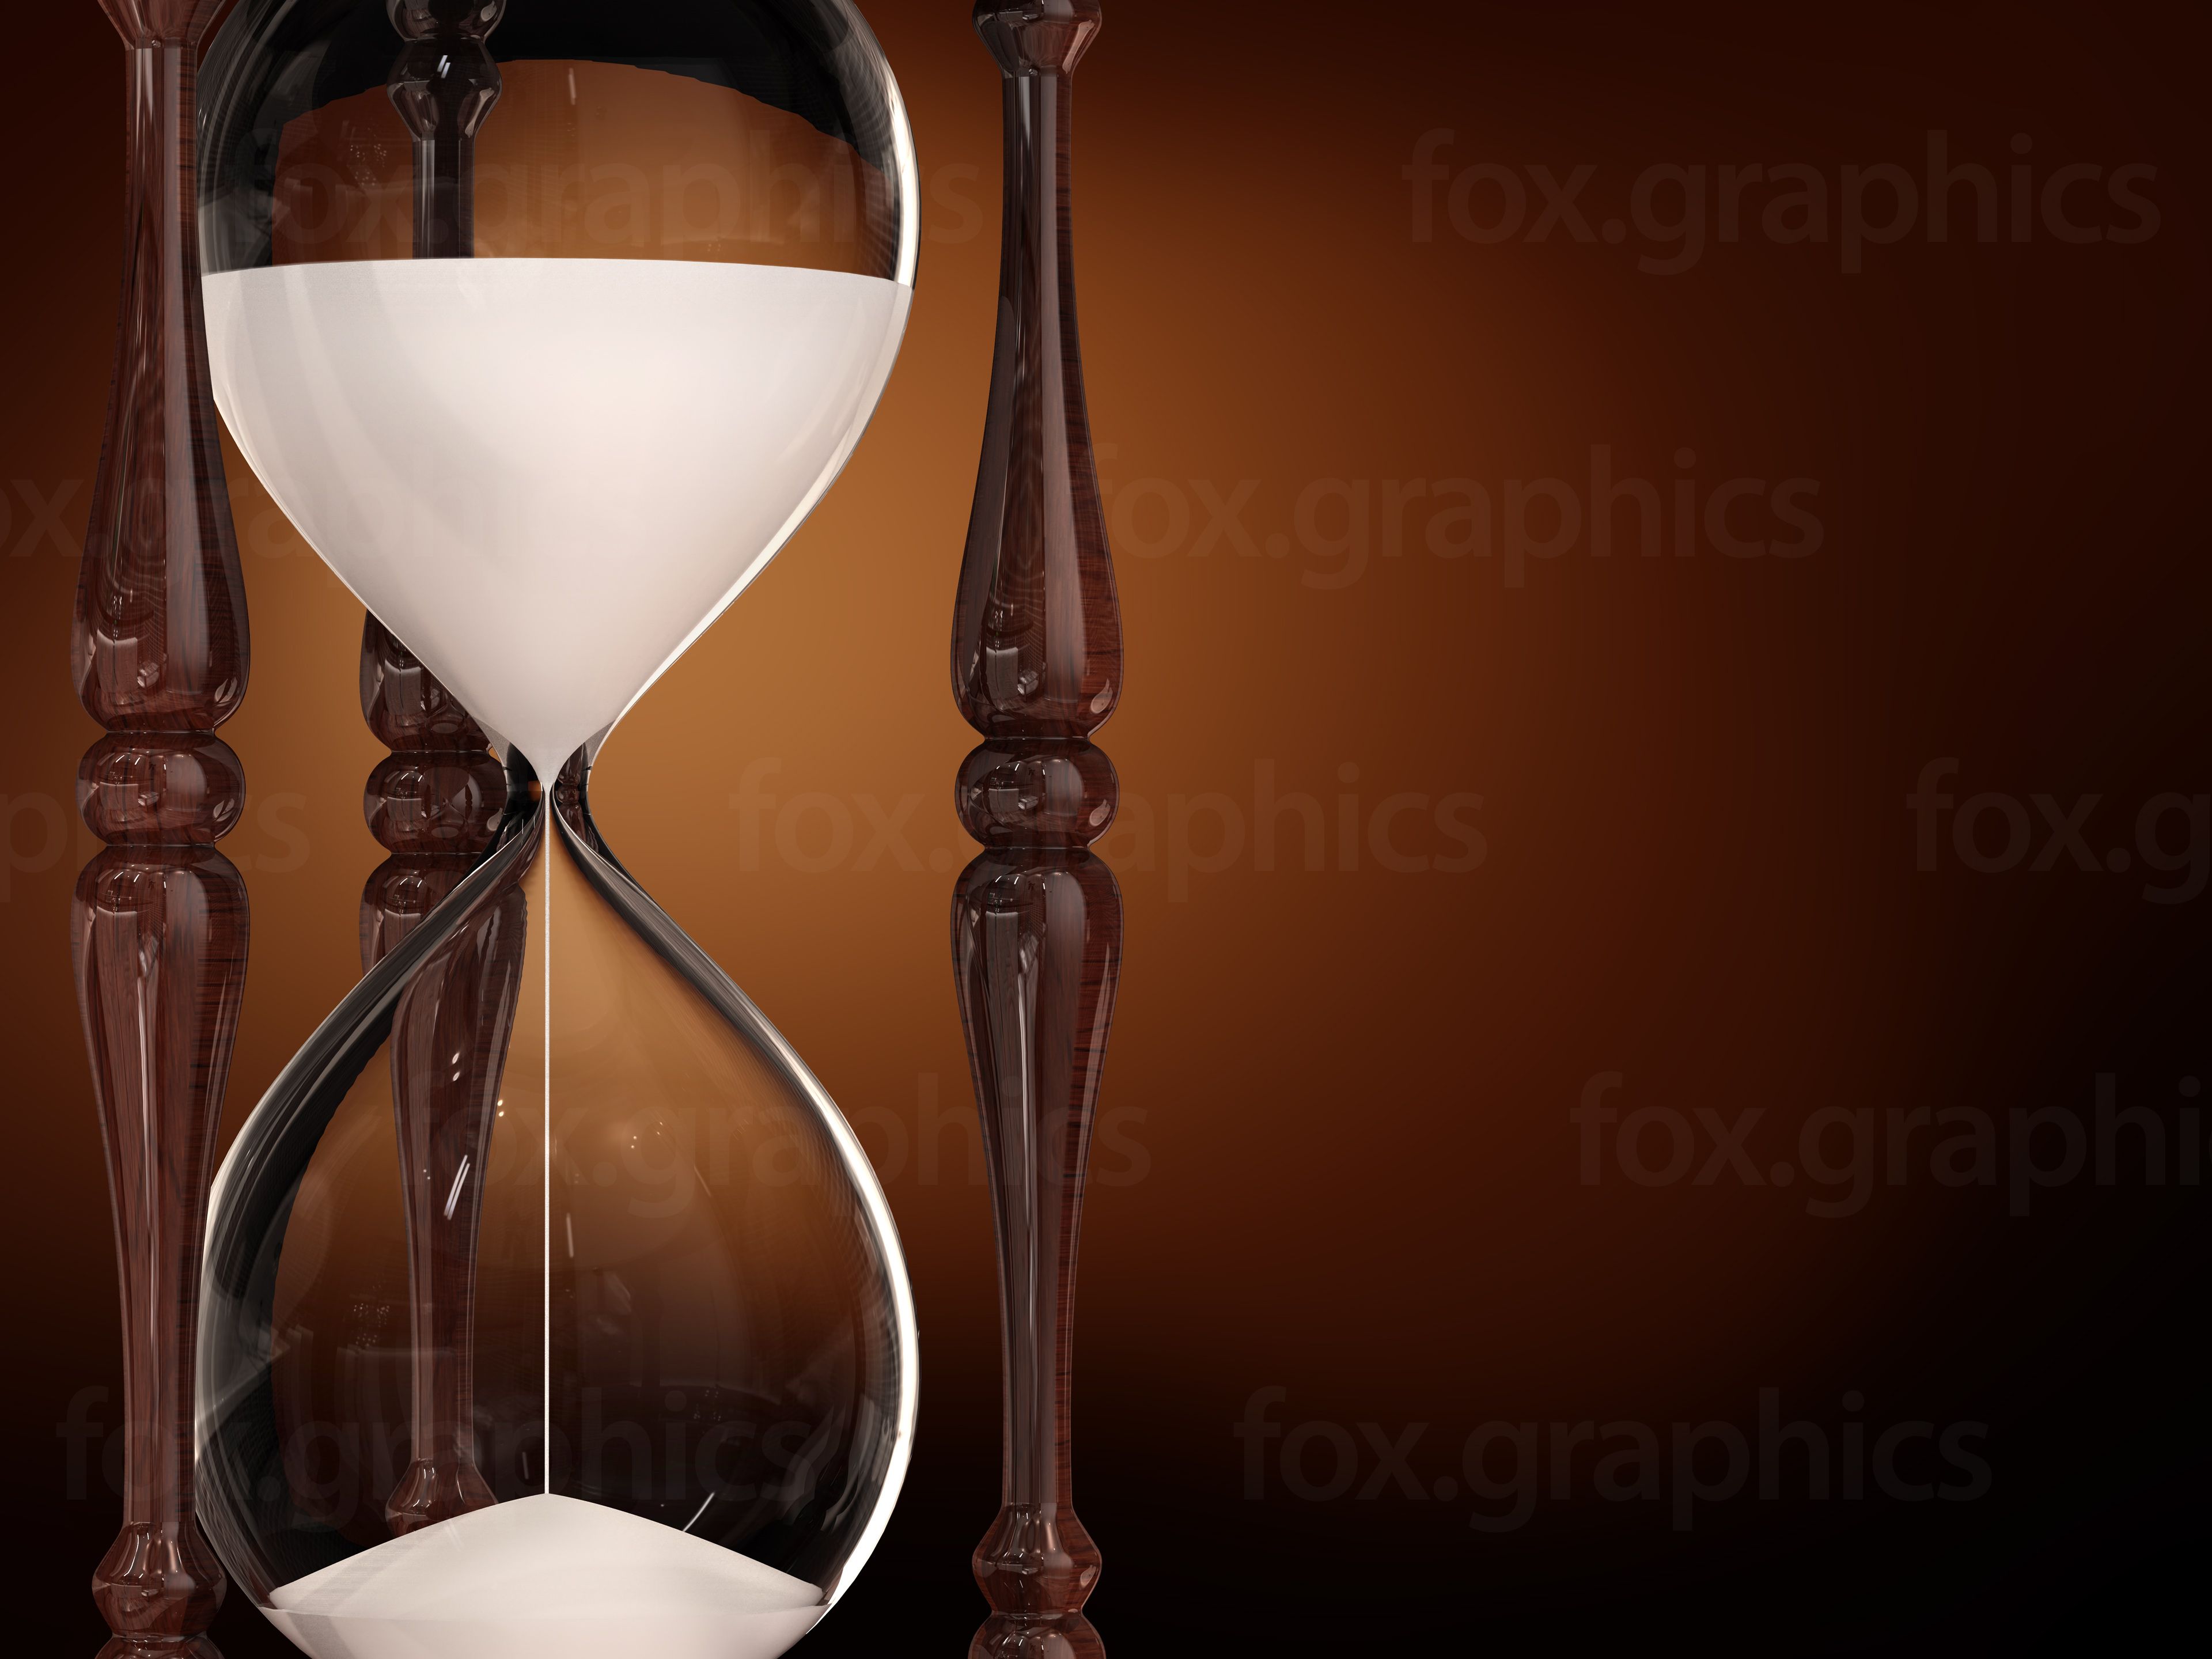 Hourglass Background. Zelda Phantom Hourglass Wallpaper, Hourglass Nebula Wallpaper and Phantom Hourglass Wallpaper